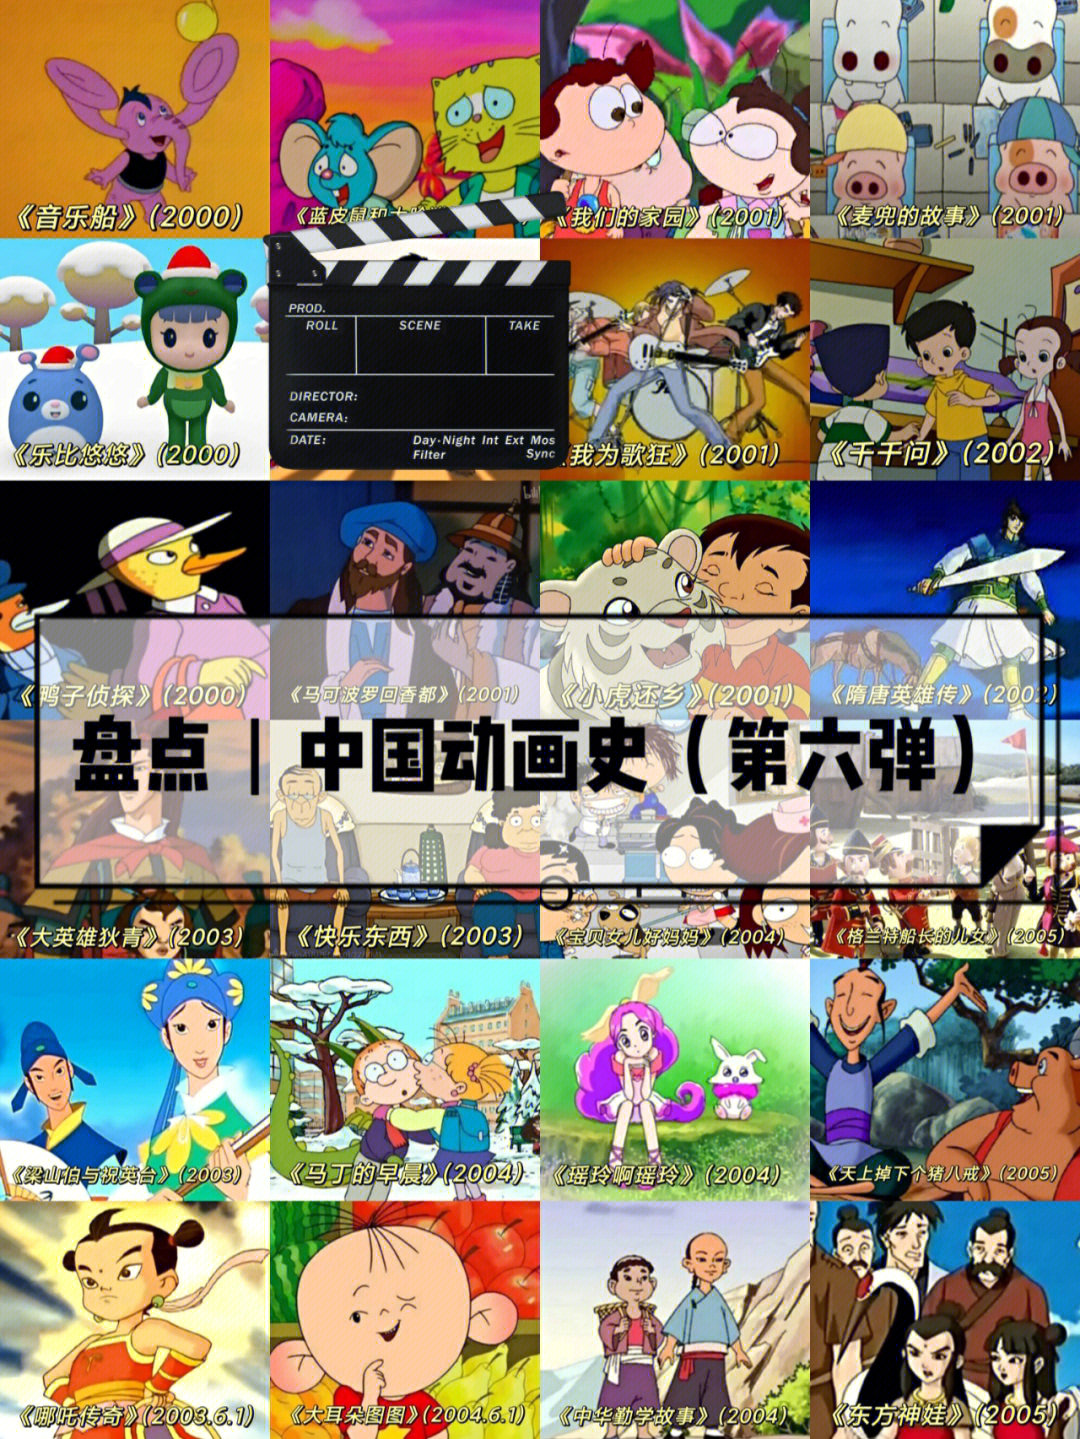 中国动漫产业快速发展,国家政府对动画业给予大力的支持,我国动漫产业